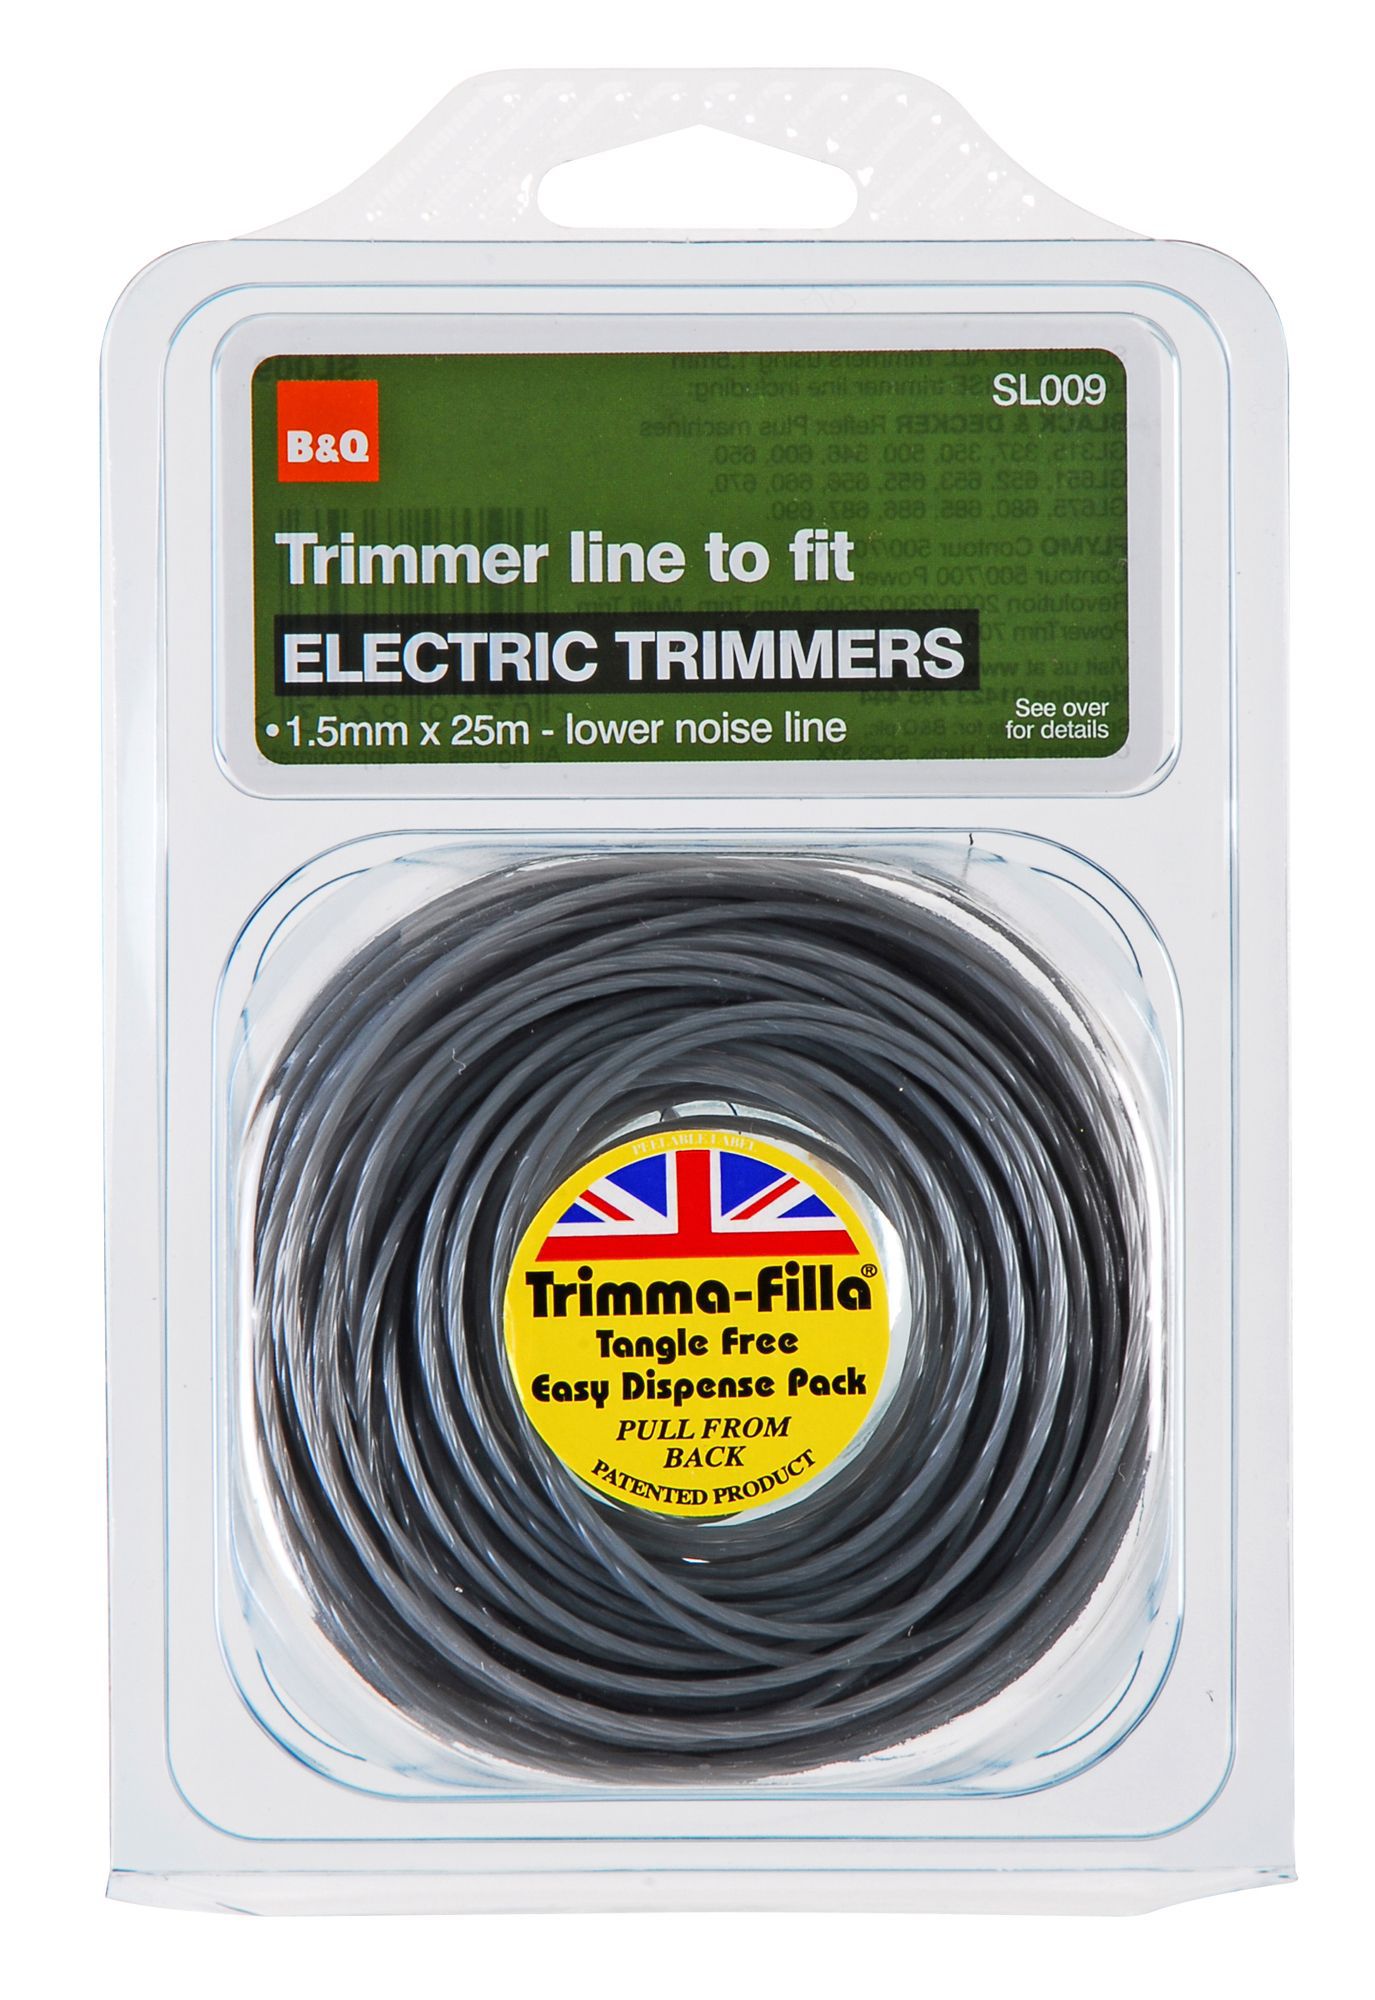 SL009 Trimmer line